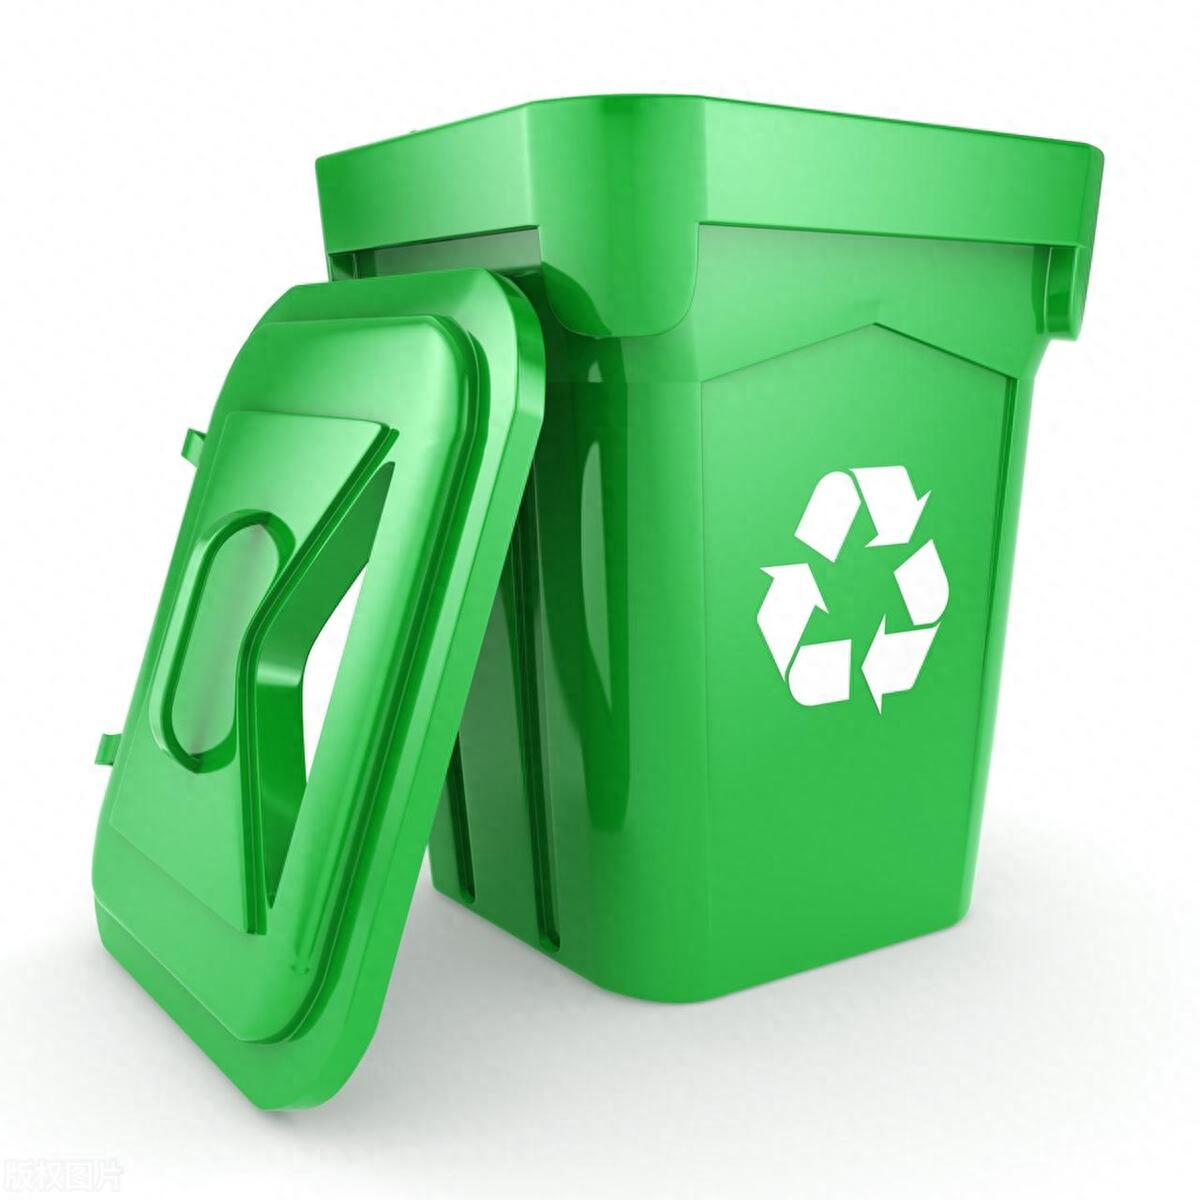 废塑料再生利用技术规范_废塑料回收与再生利用污染控制技术规范_废塑料再生技术